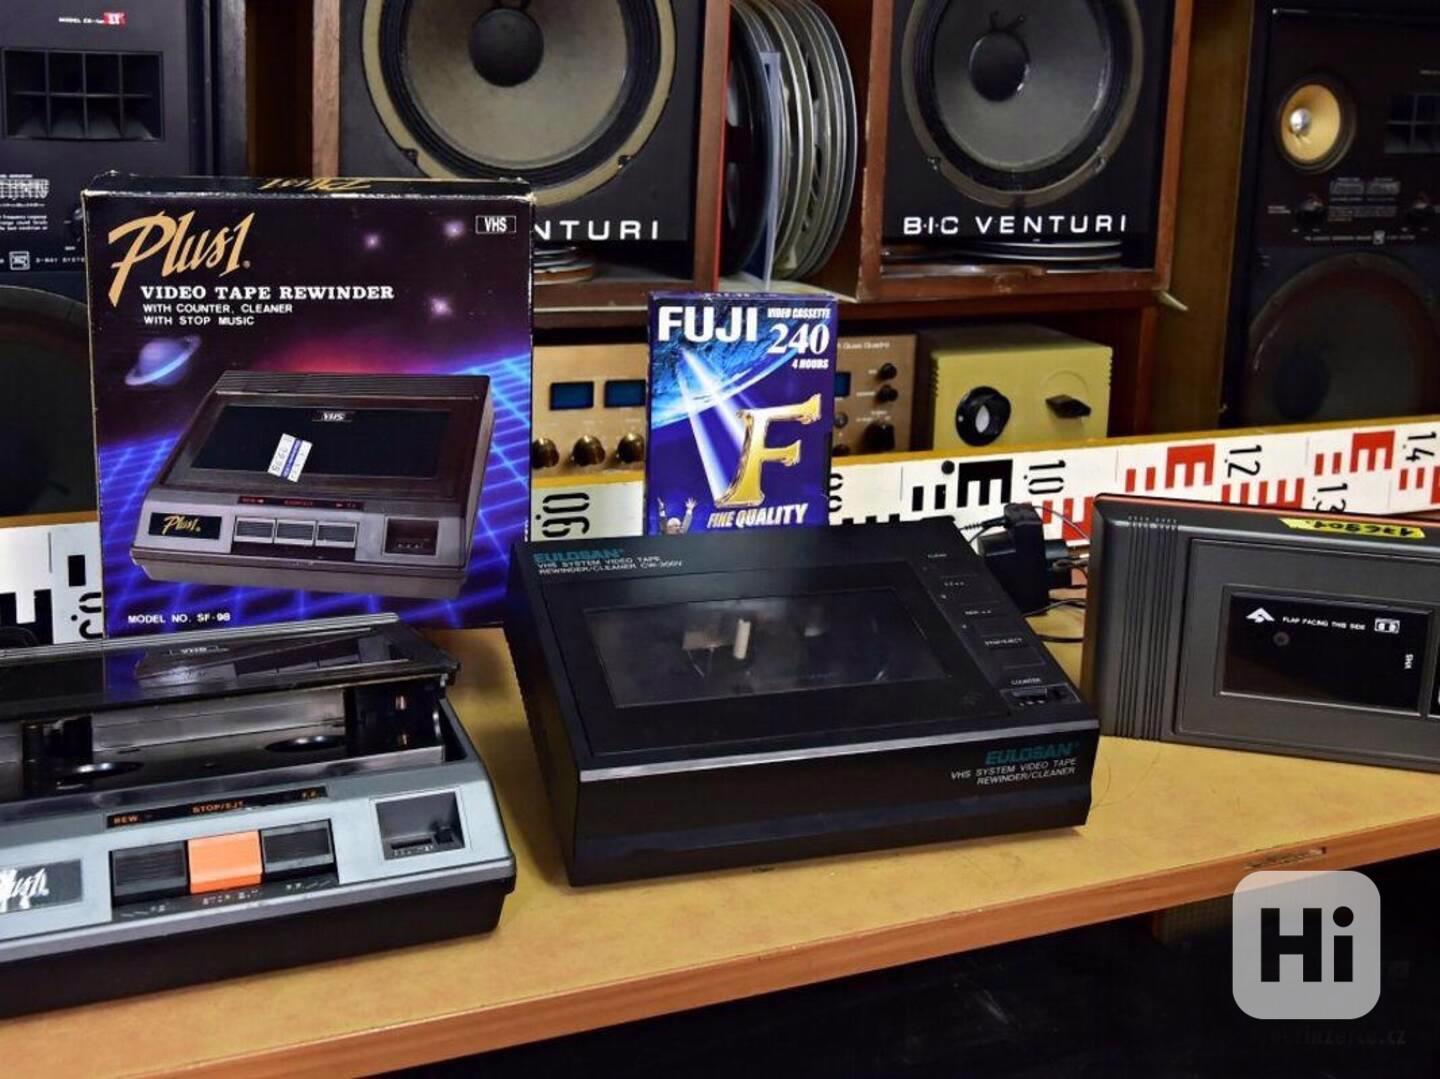 VHS video cassette tape rewinder cleaner převíječ VHS kazet - foto 1